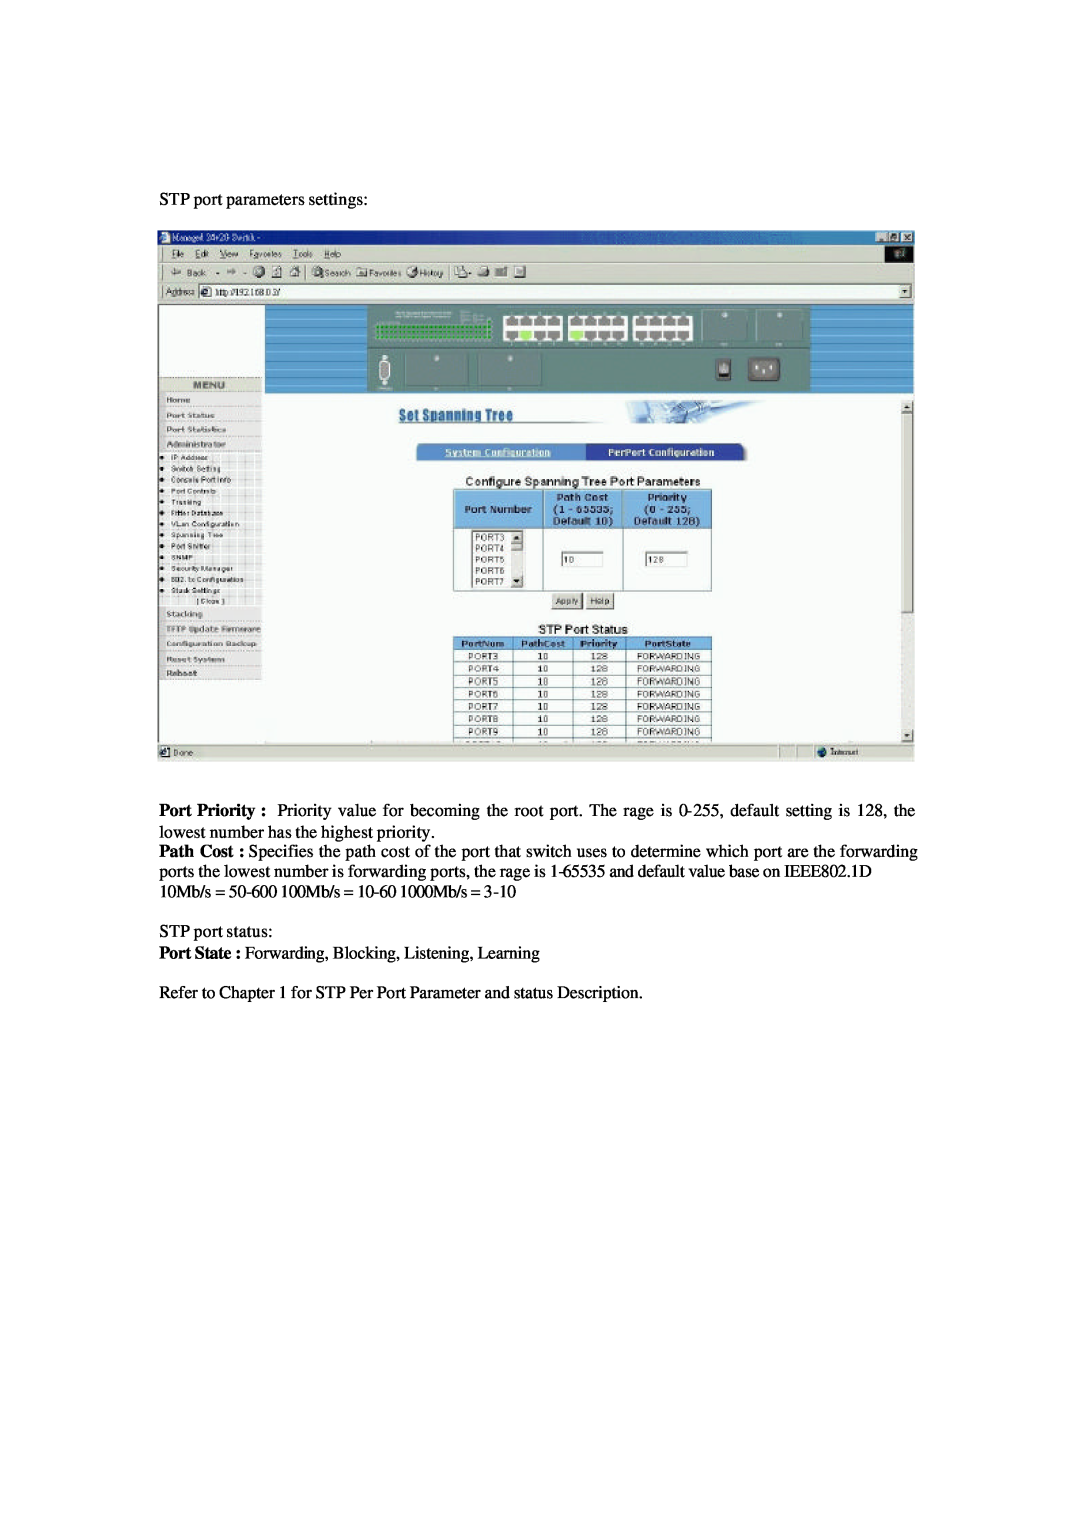 Xerox NS-2260 operation manual STP port parameters settings, STP port status 